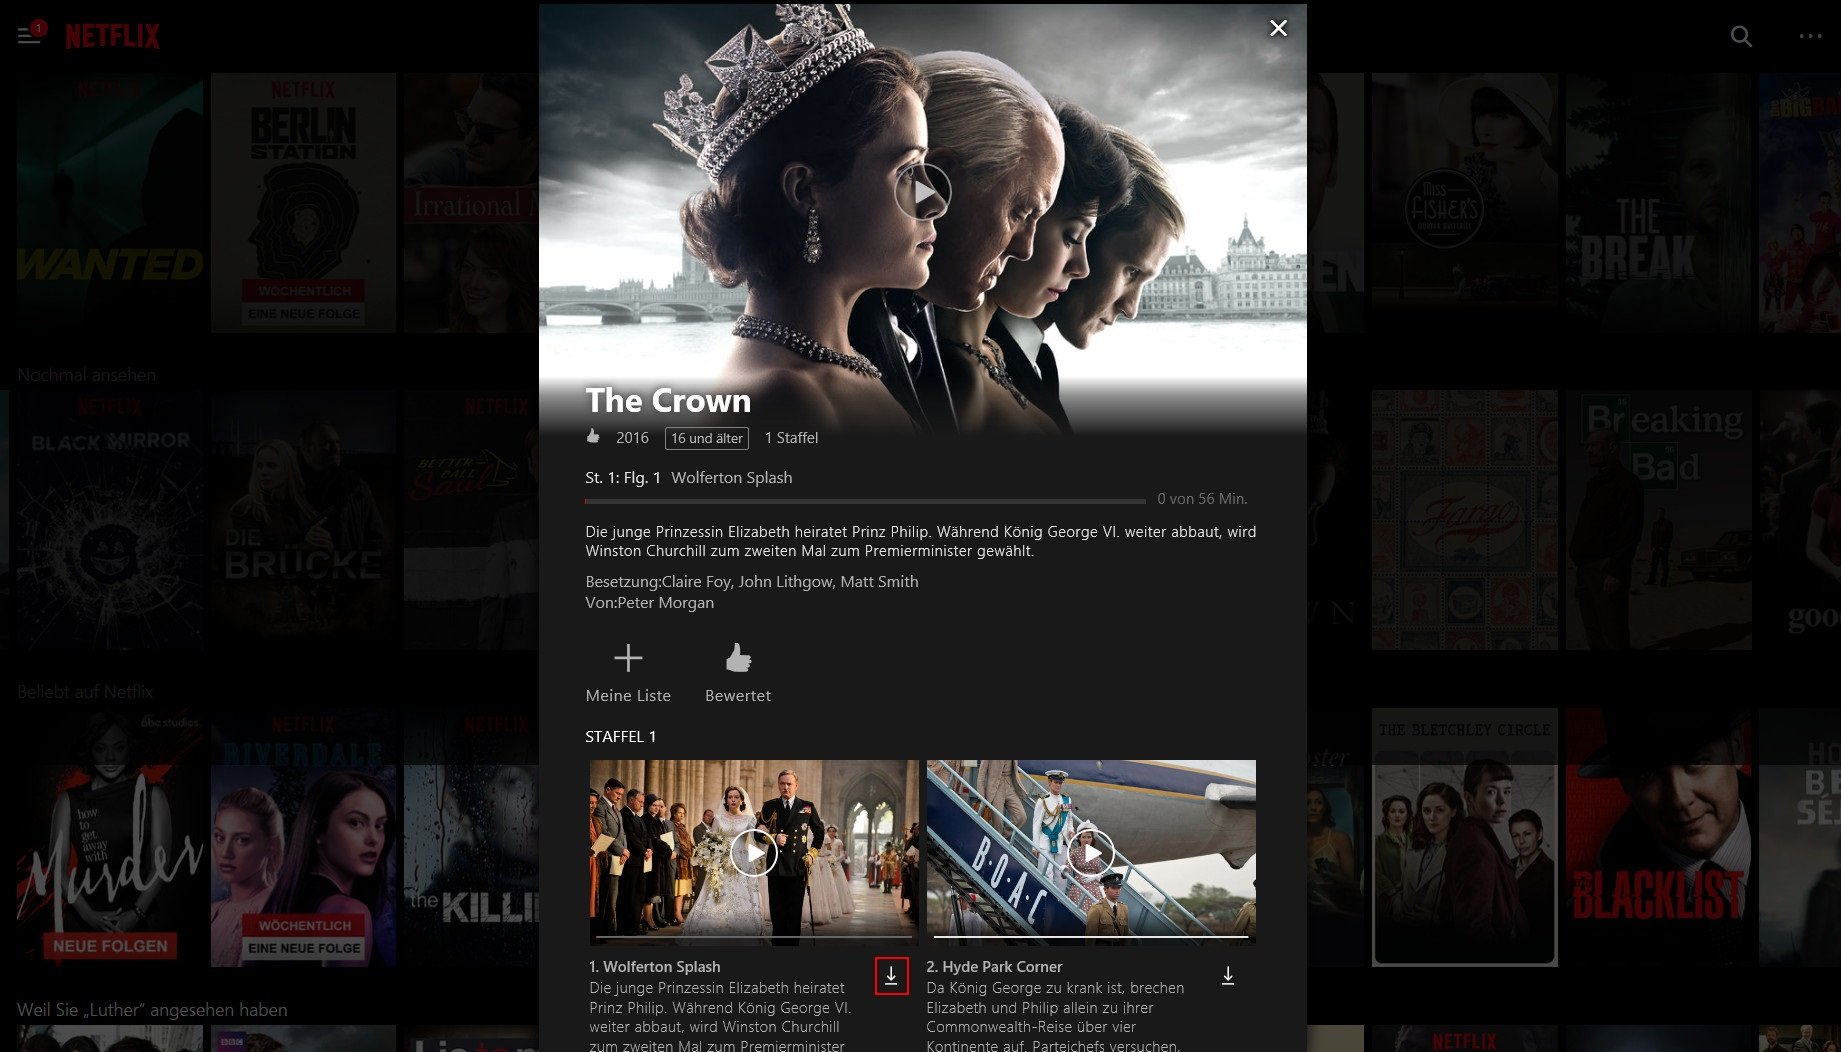 Wenn sich eine Episode downloaden lässt, wird dies in der Netflix-Windows-App angezeigt (rot markiert)